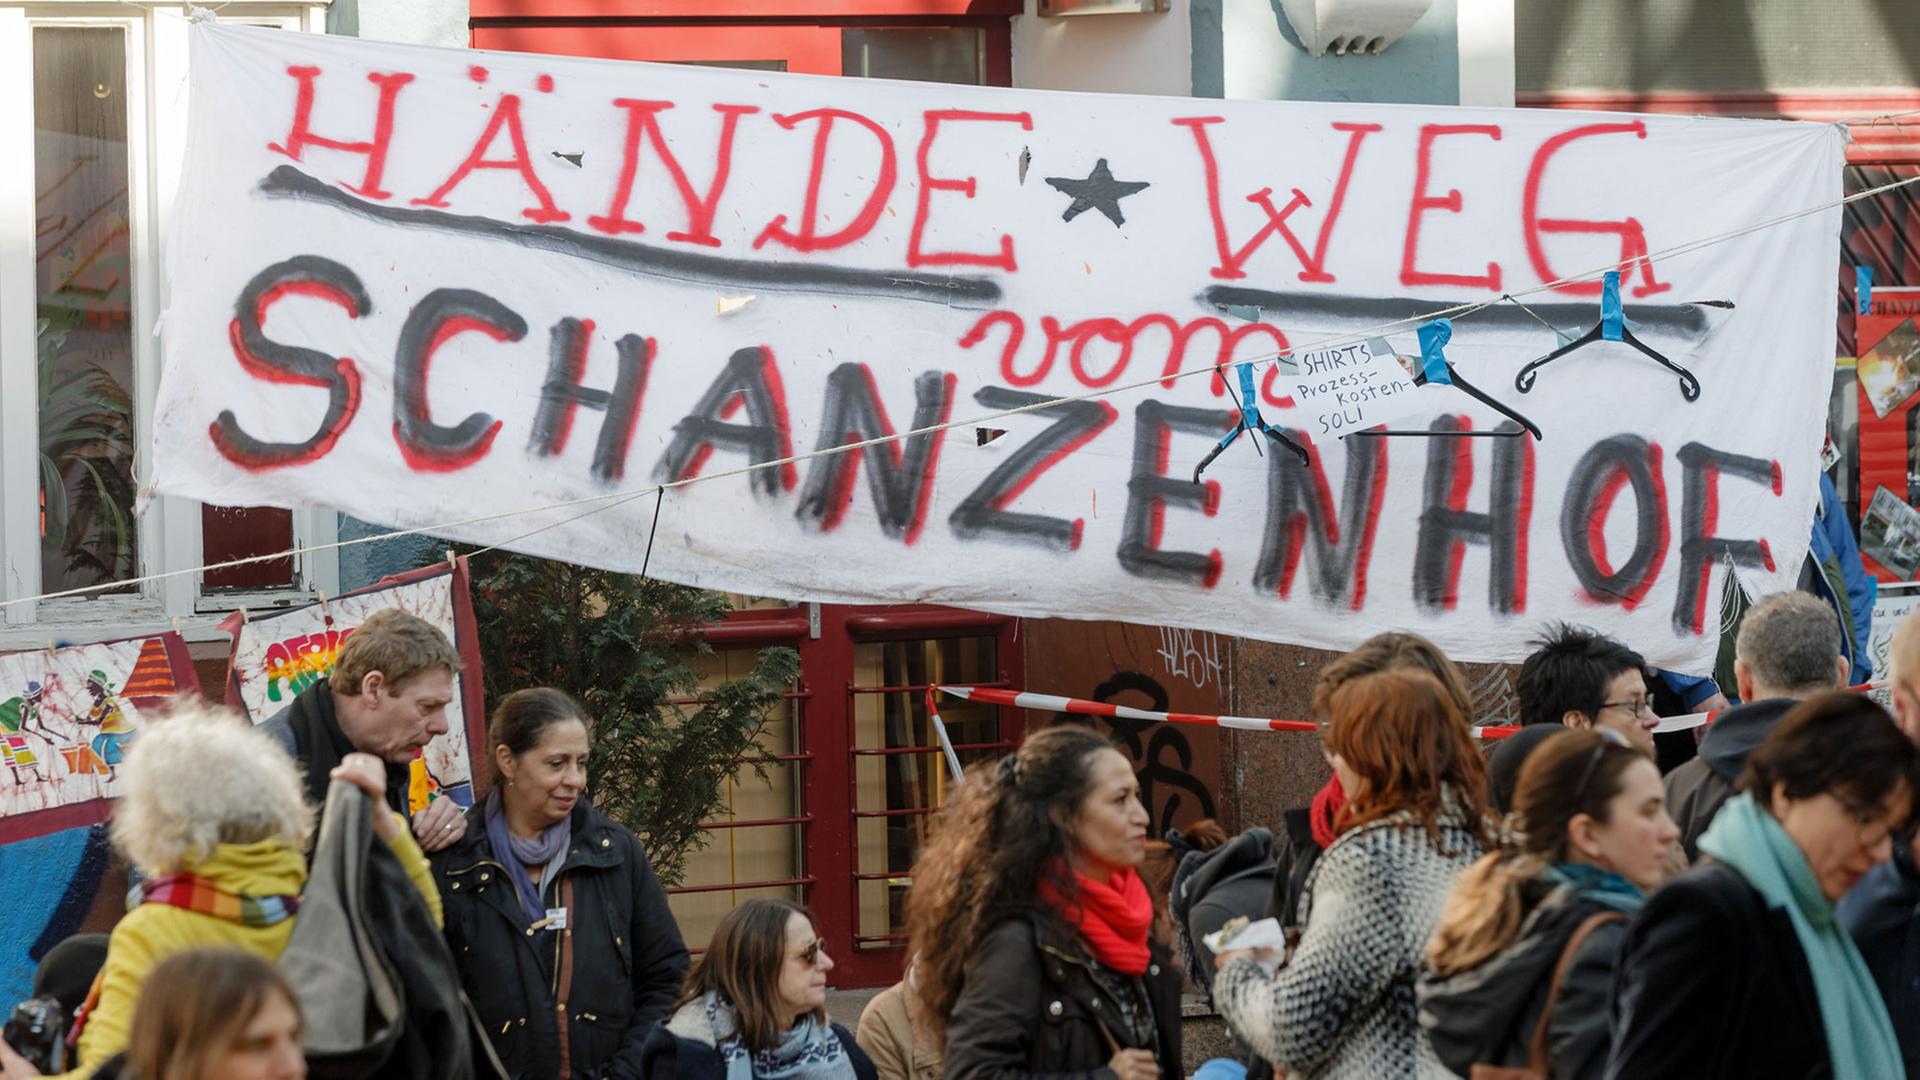 Ein Transparent mit der Aufschrift "Hände weg vom Schanzenhof" hängt am 26.03.2016 im Hamburger Schanzenviertel vor dem Gebäudekomplex Schanzenhof, in dem ein Investor ein Hotel eröffnen will.